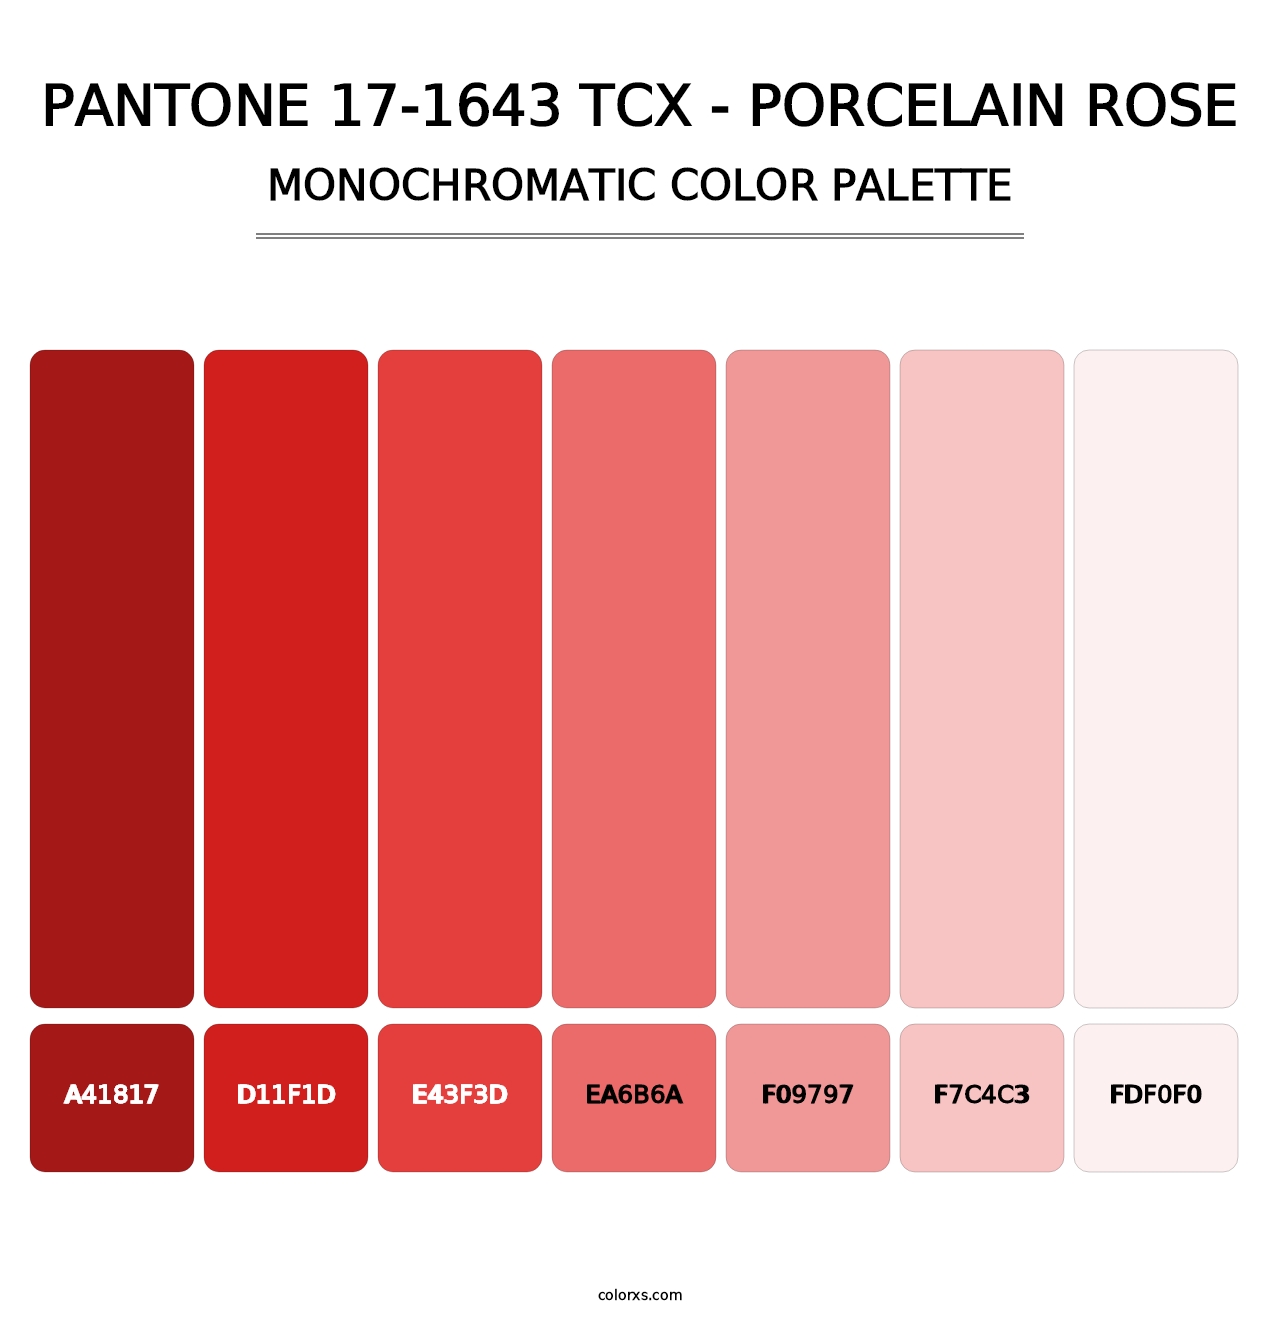 PANTONE 17-1643 TCX - Porcelain Rose - Monochromatic Color Palette